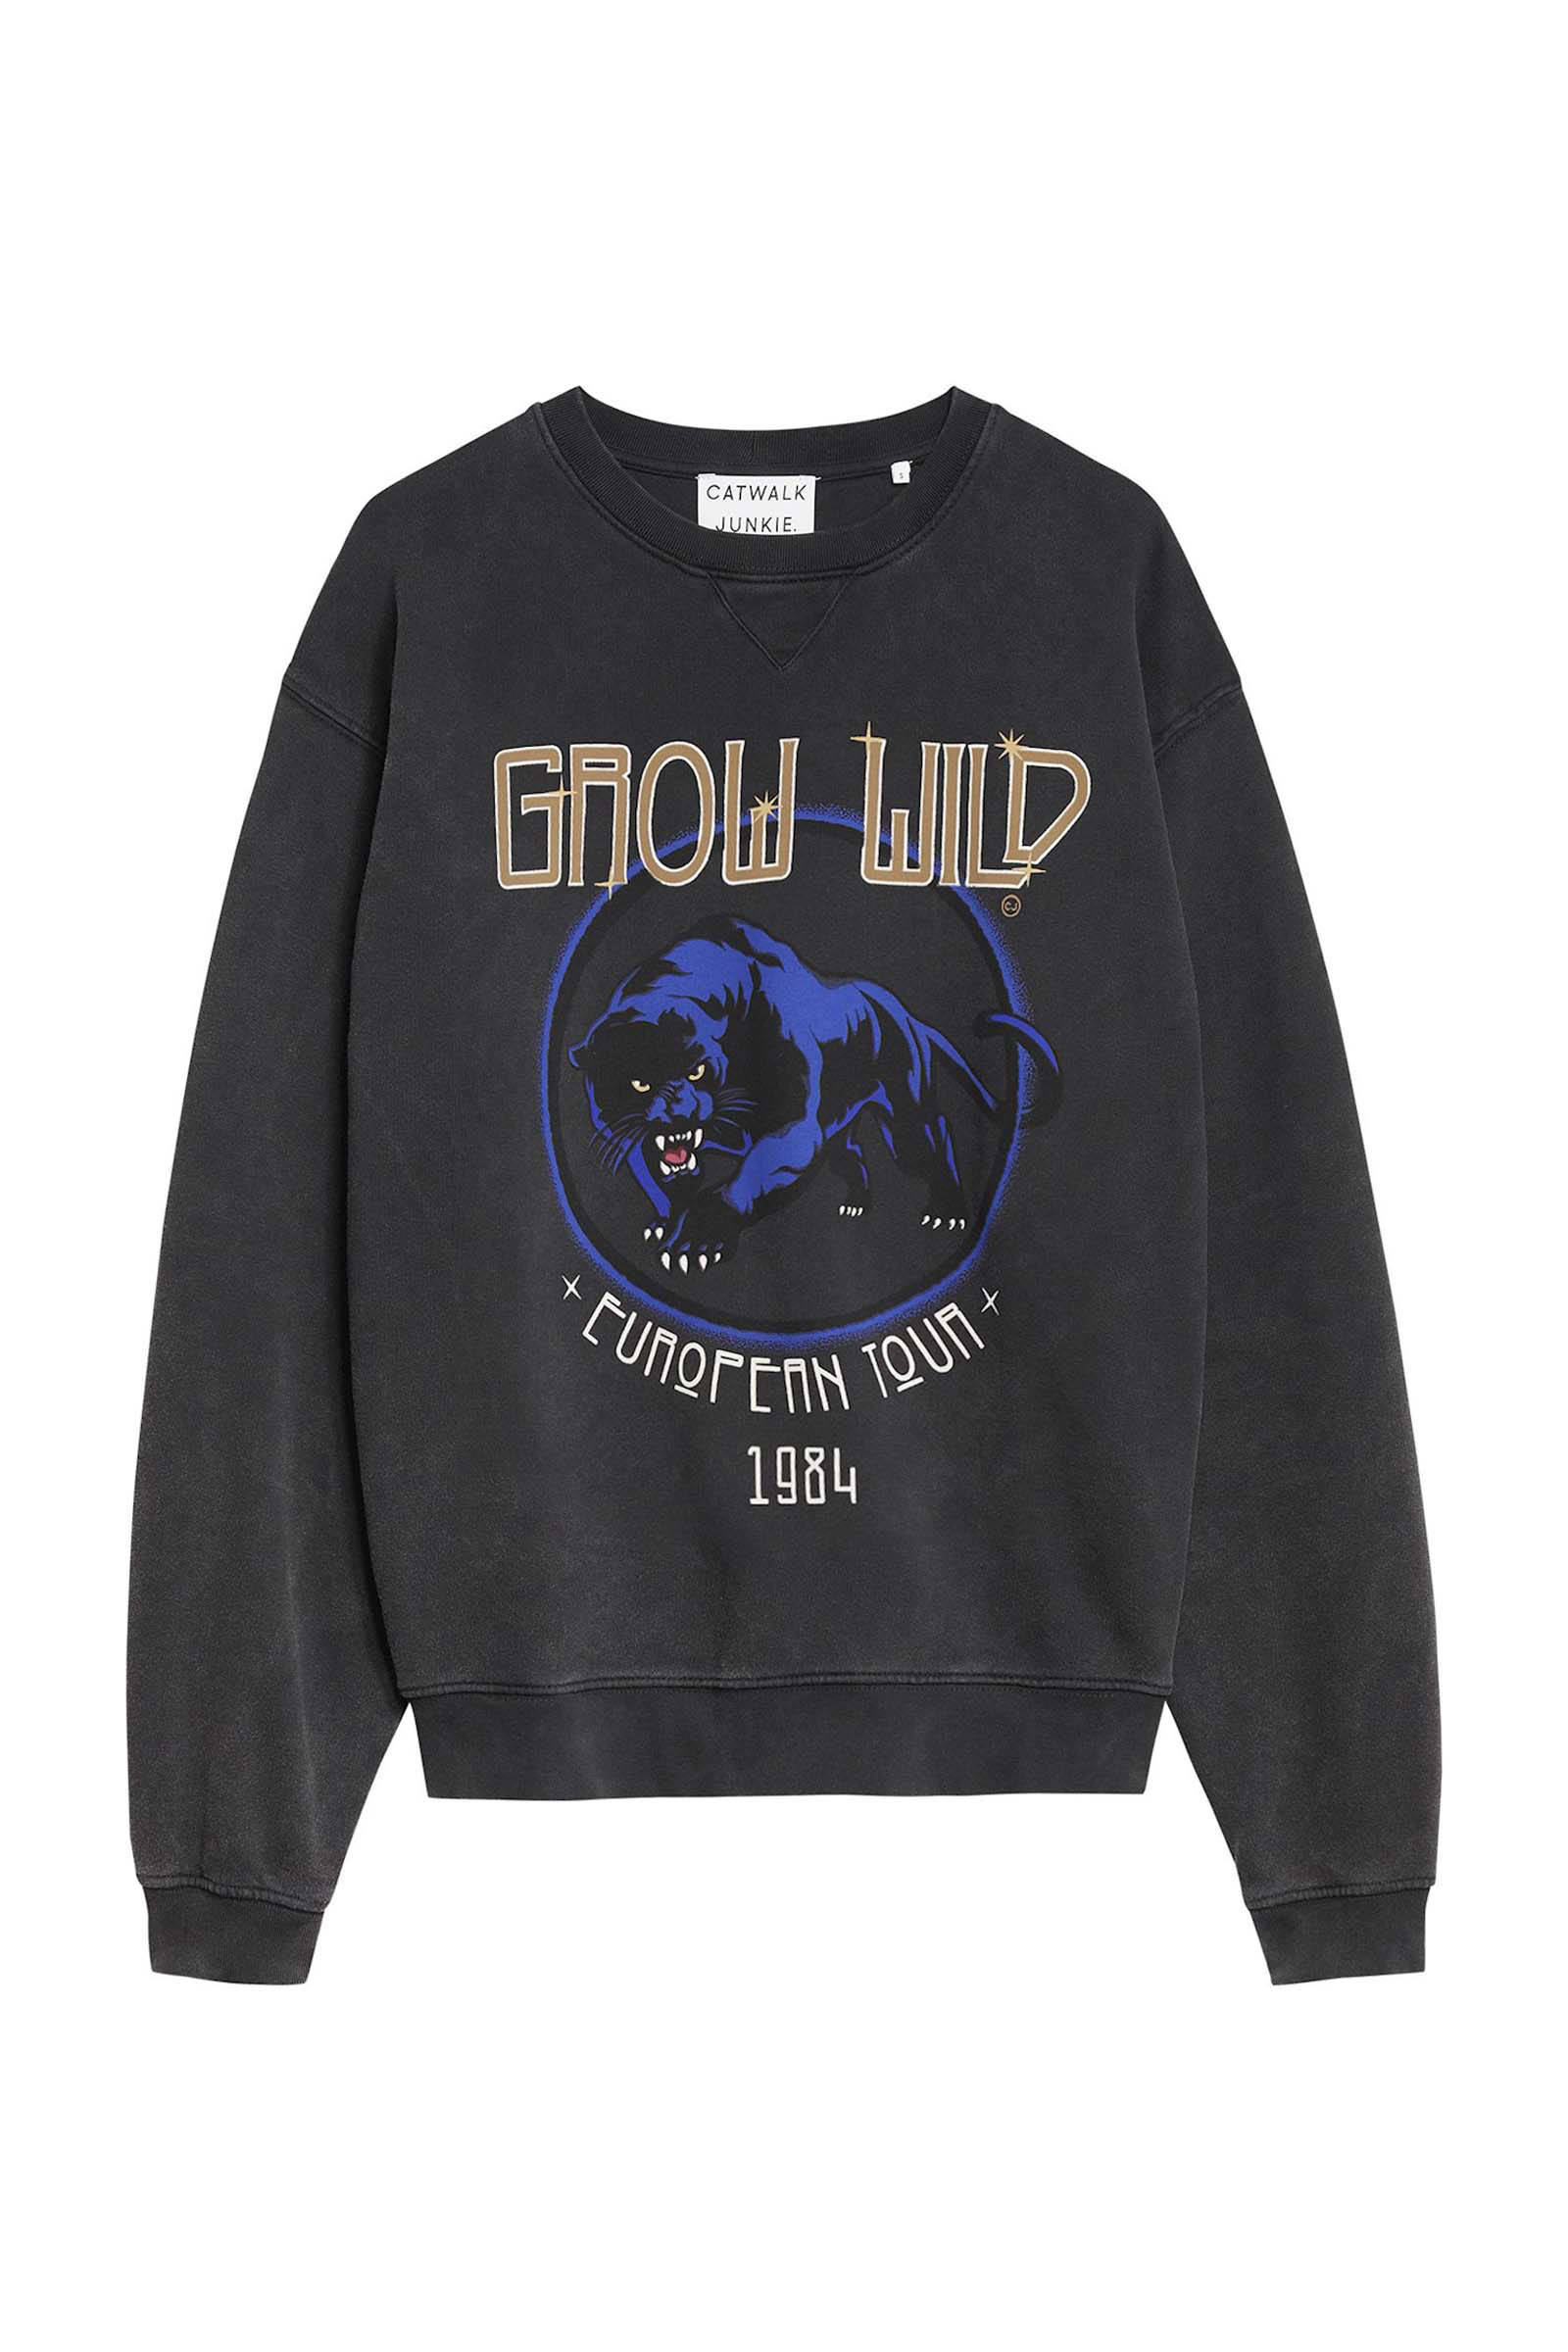 Catwalk Junkie sweater Grow Wild van biologisch katoen donkergrijs online kopen